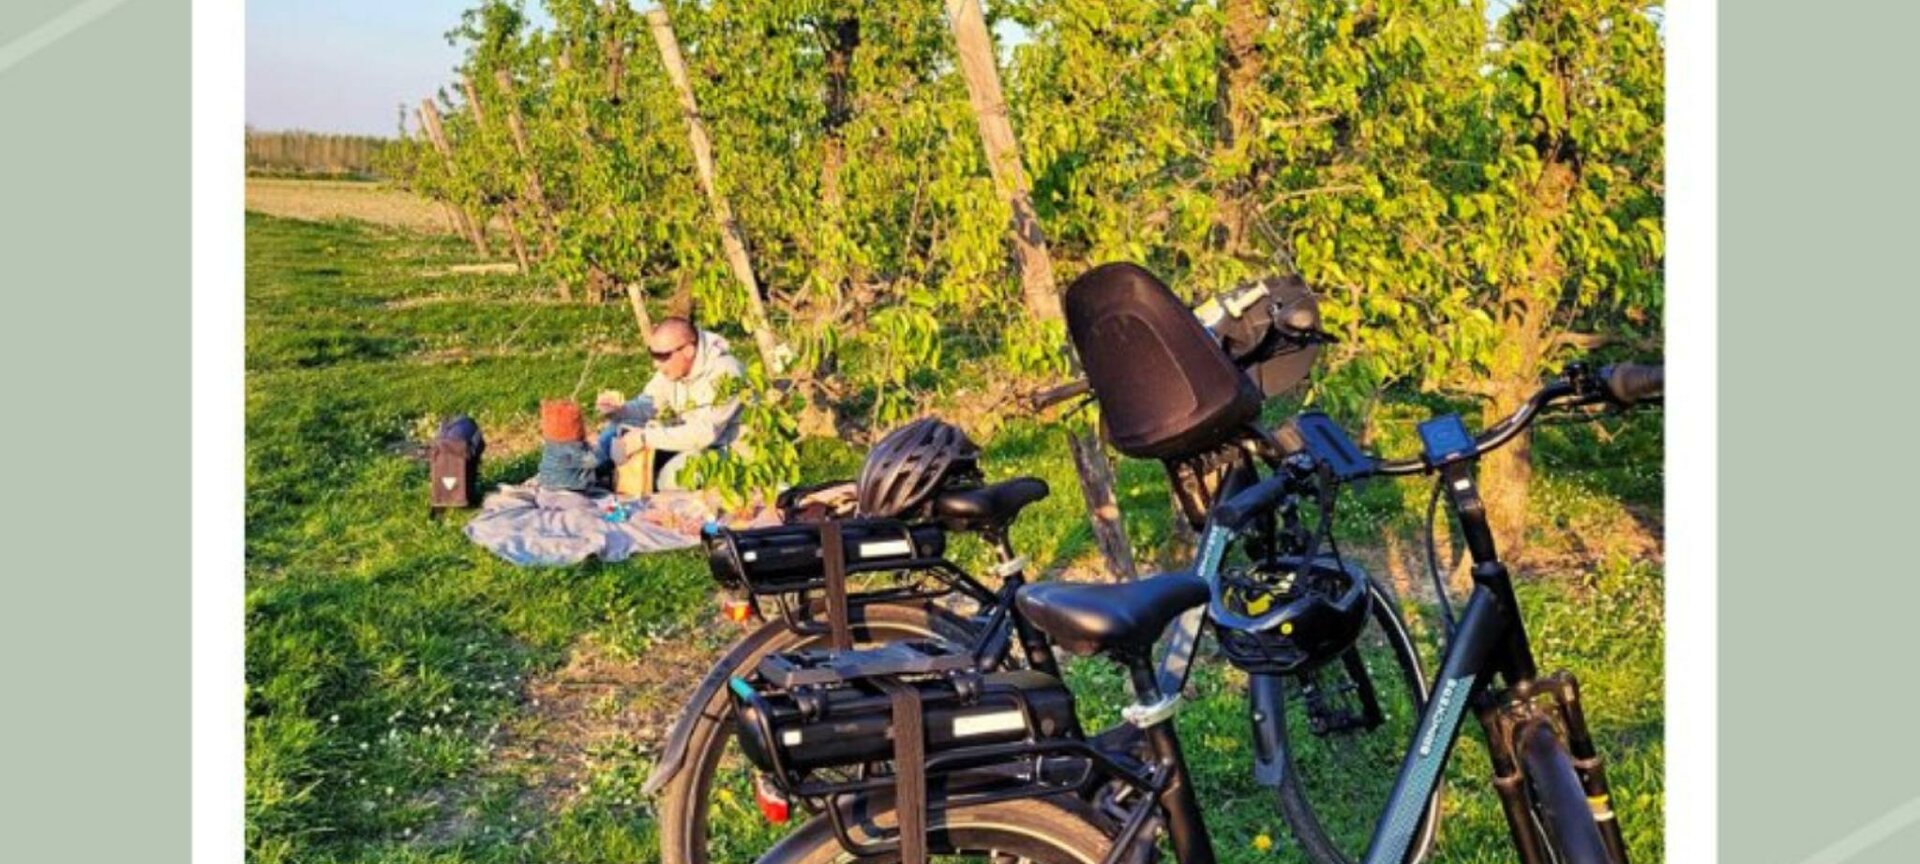 Huur een Kids E-bike: een dagje met de E-bike voor heel het gezin! - picknick